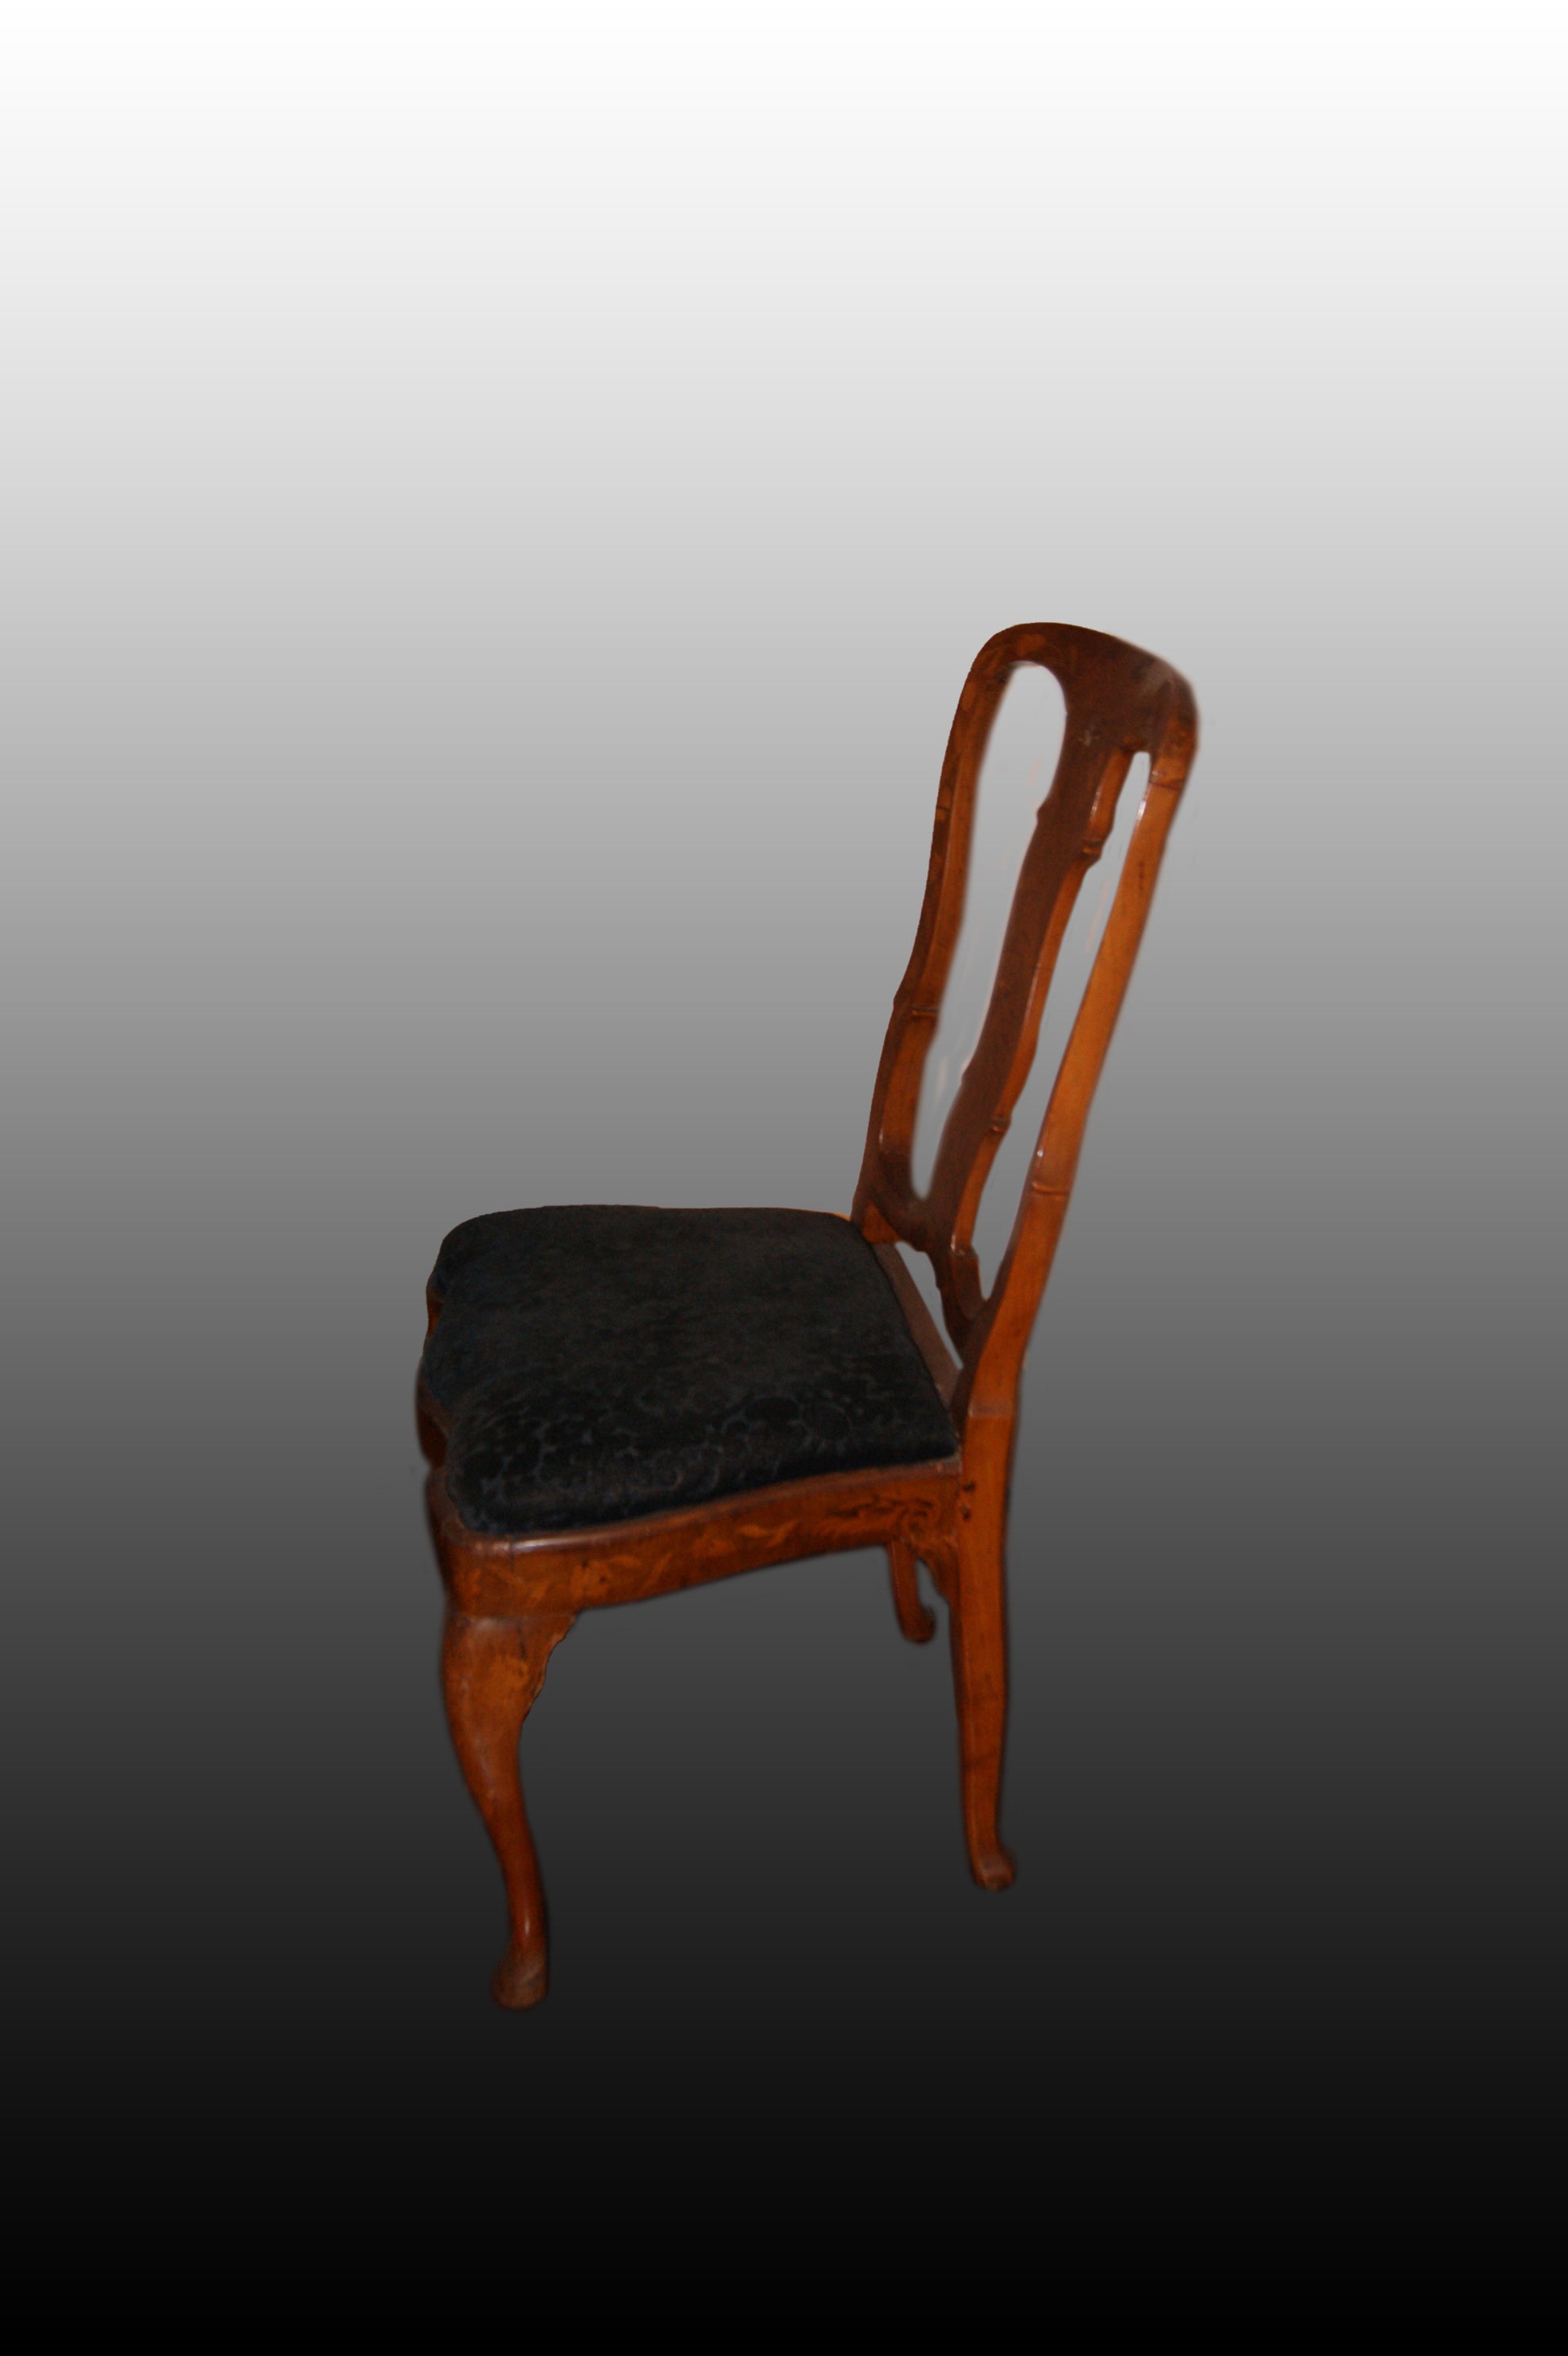 Gruppo di 6 sedie olandesi del 1700 riccamente intarsiate